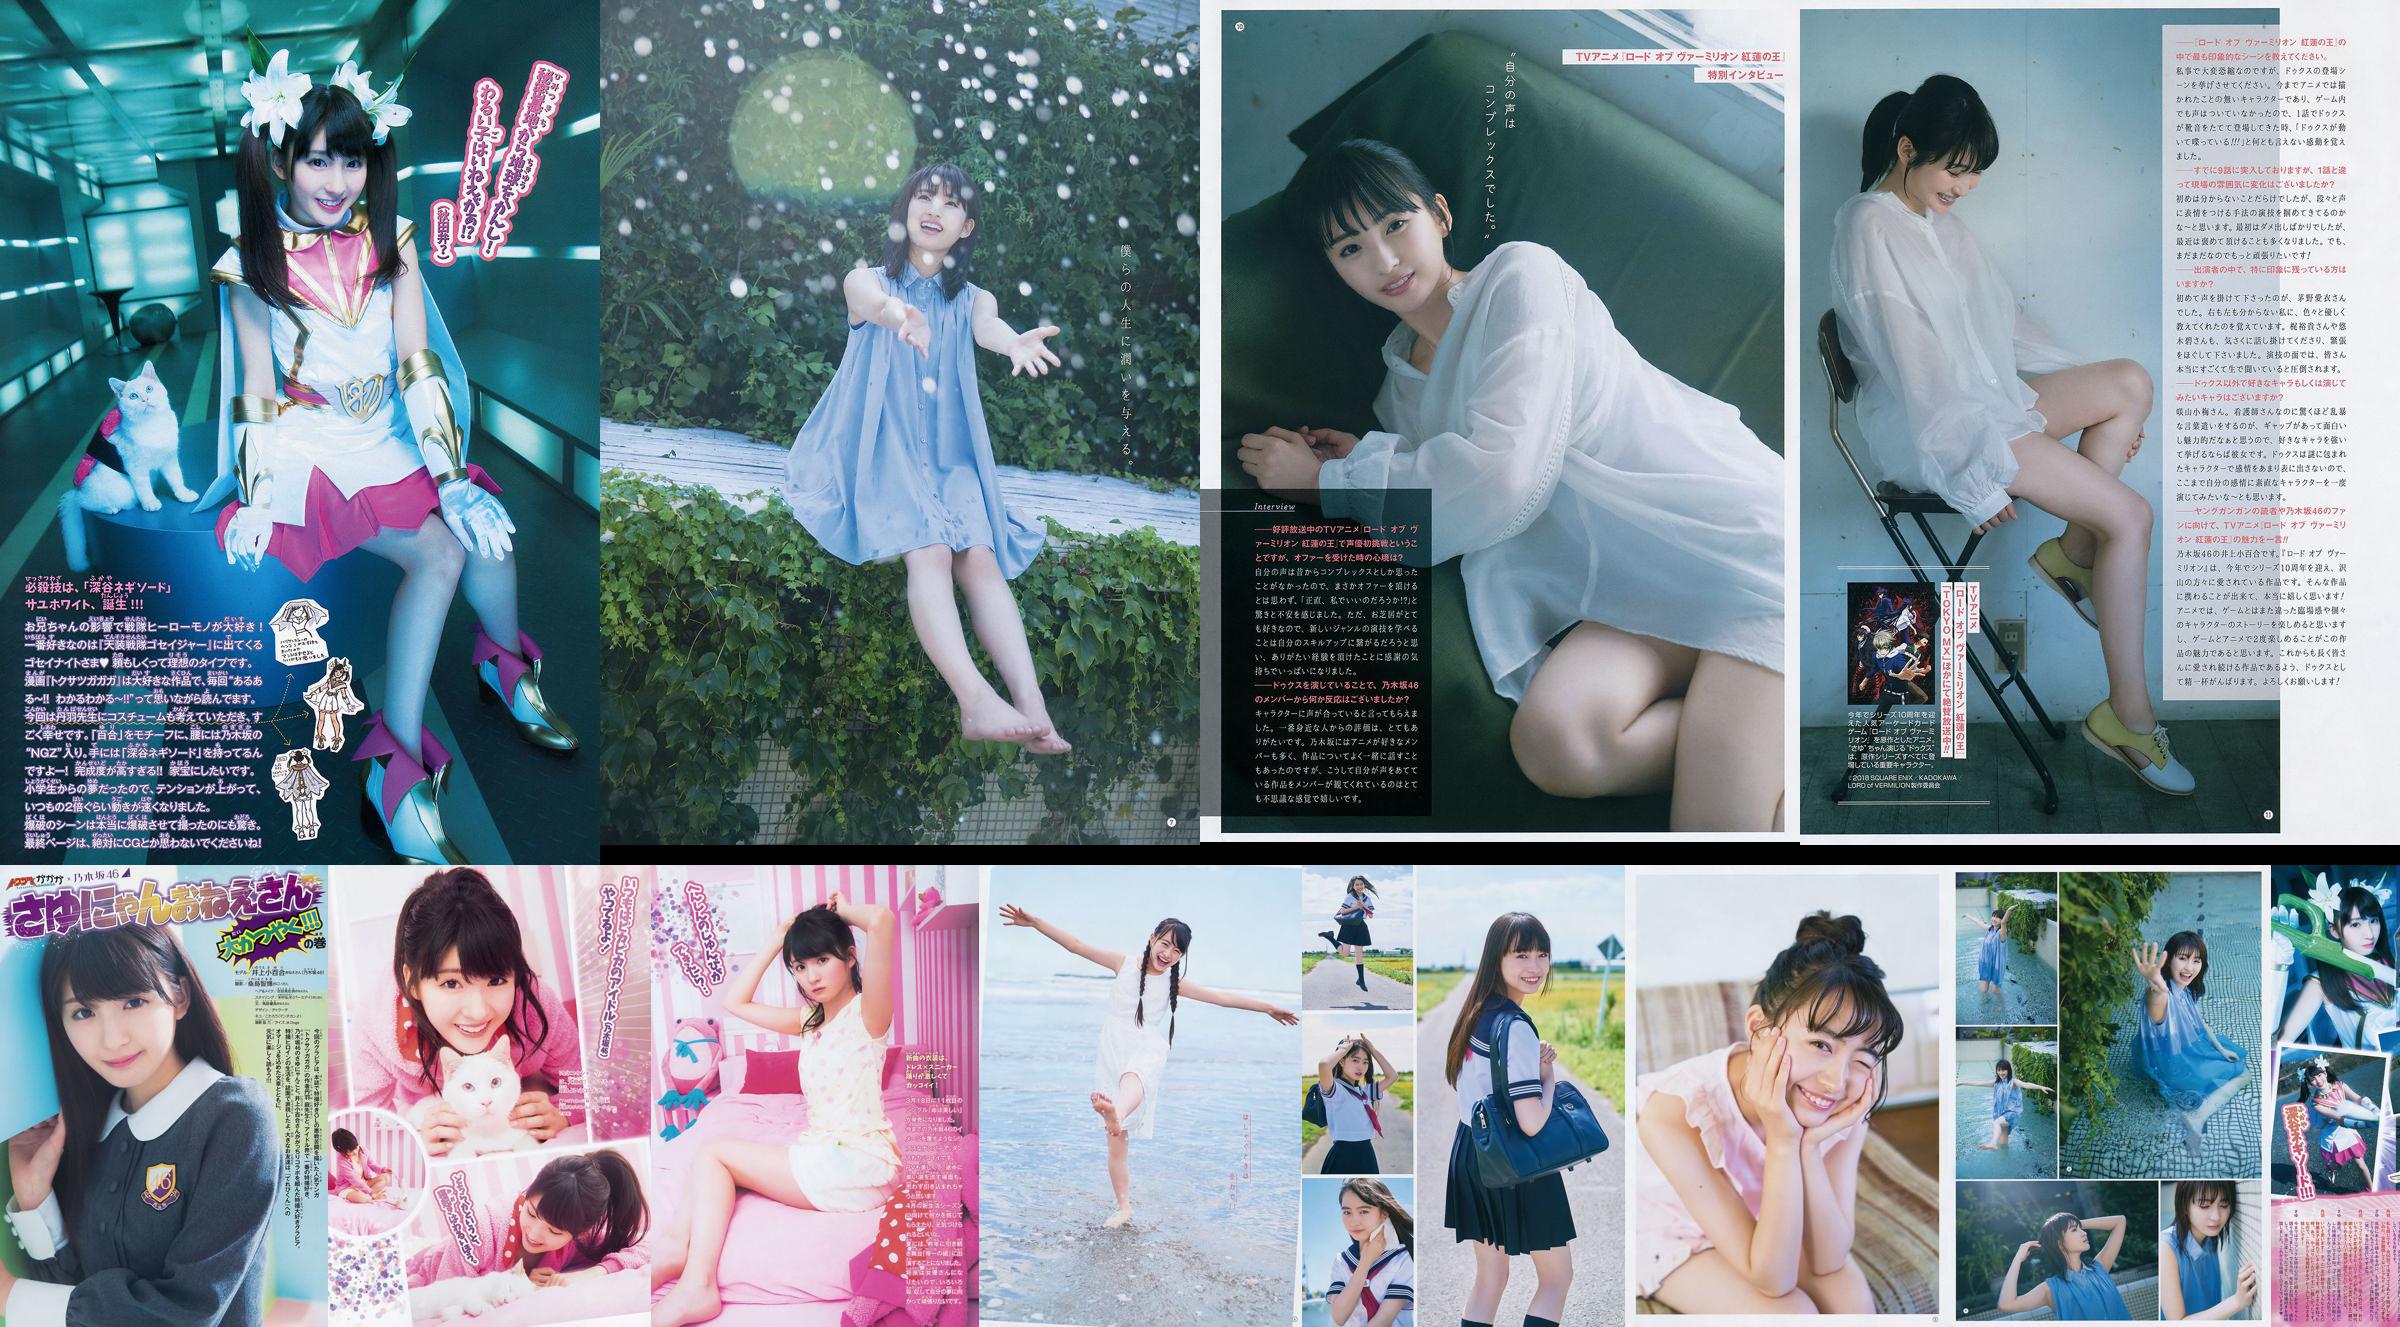 [Young Gangan] Sayuri Inoue Majalah Foto No.18 Pasir Asli 2018 No.c5fe4c Halaman 1